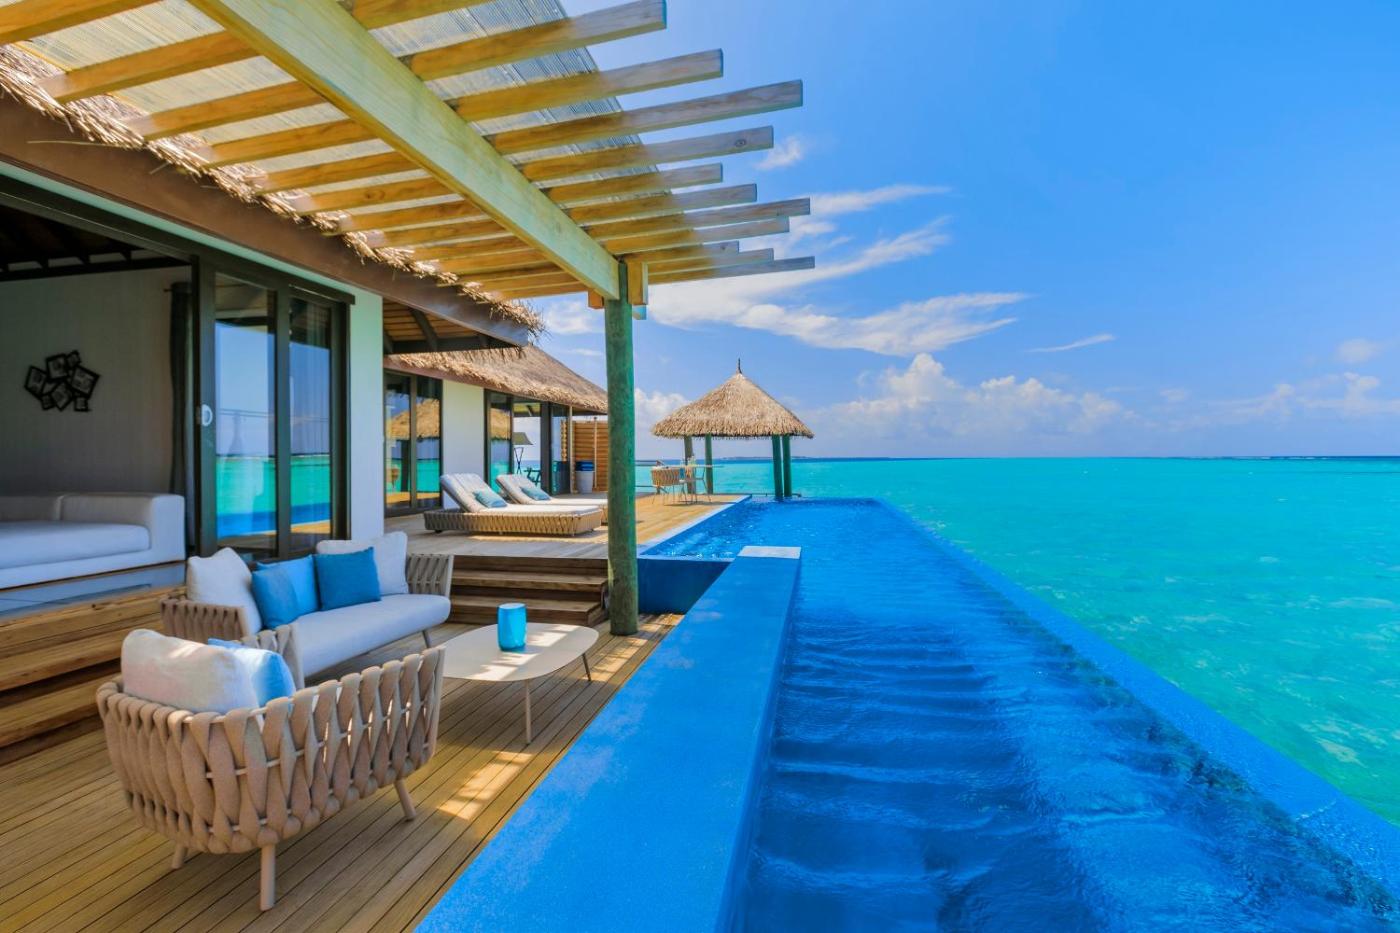 Hotel with private pool - Velassaru Maldives